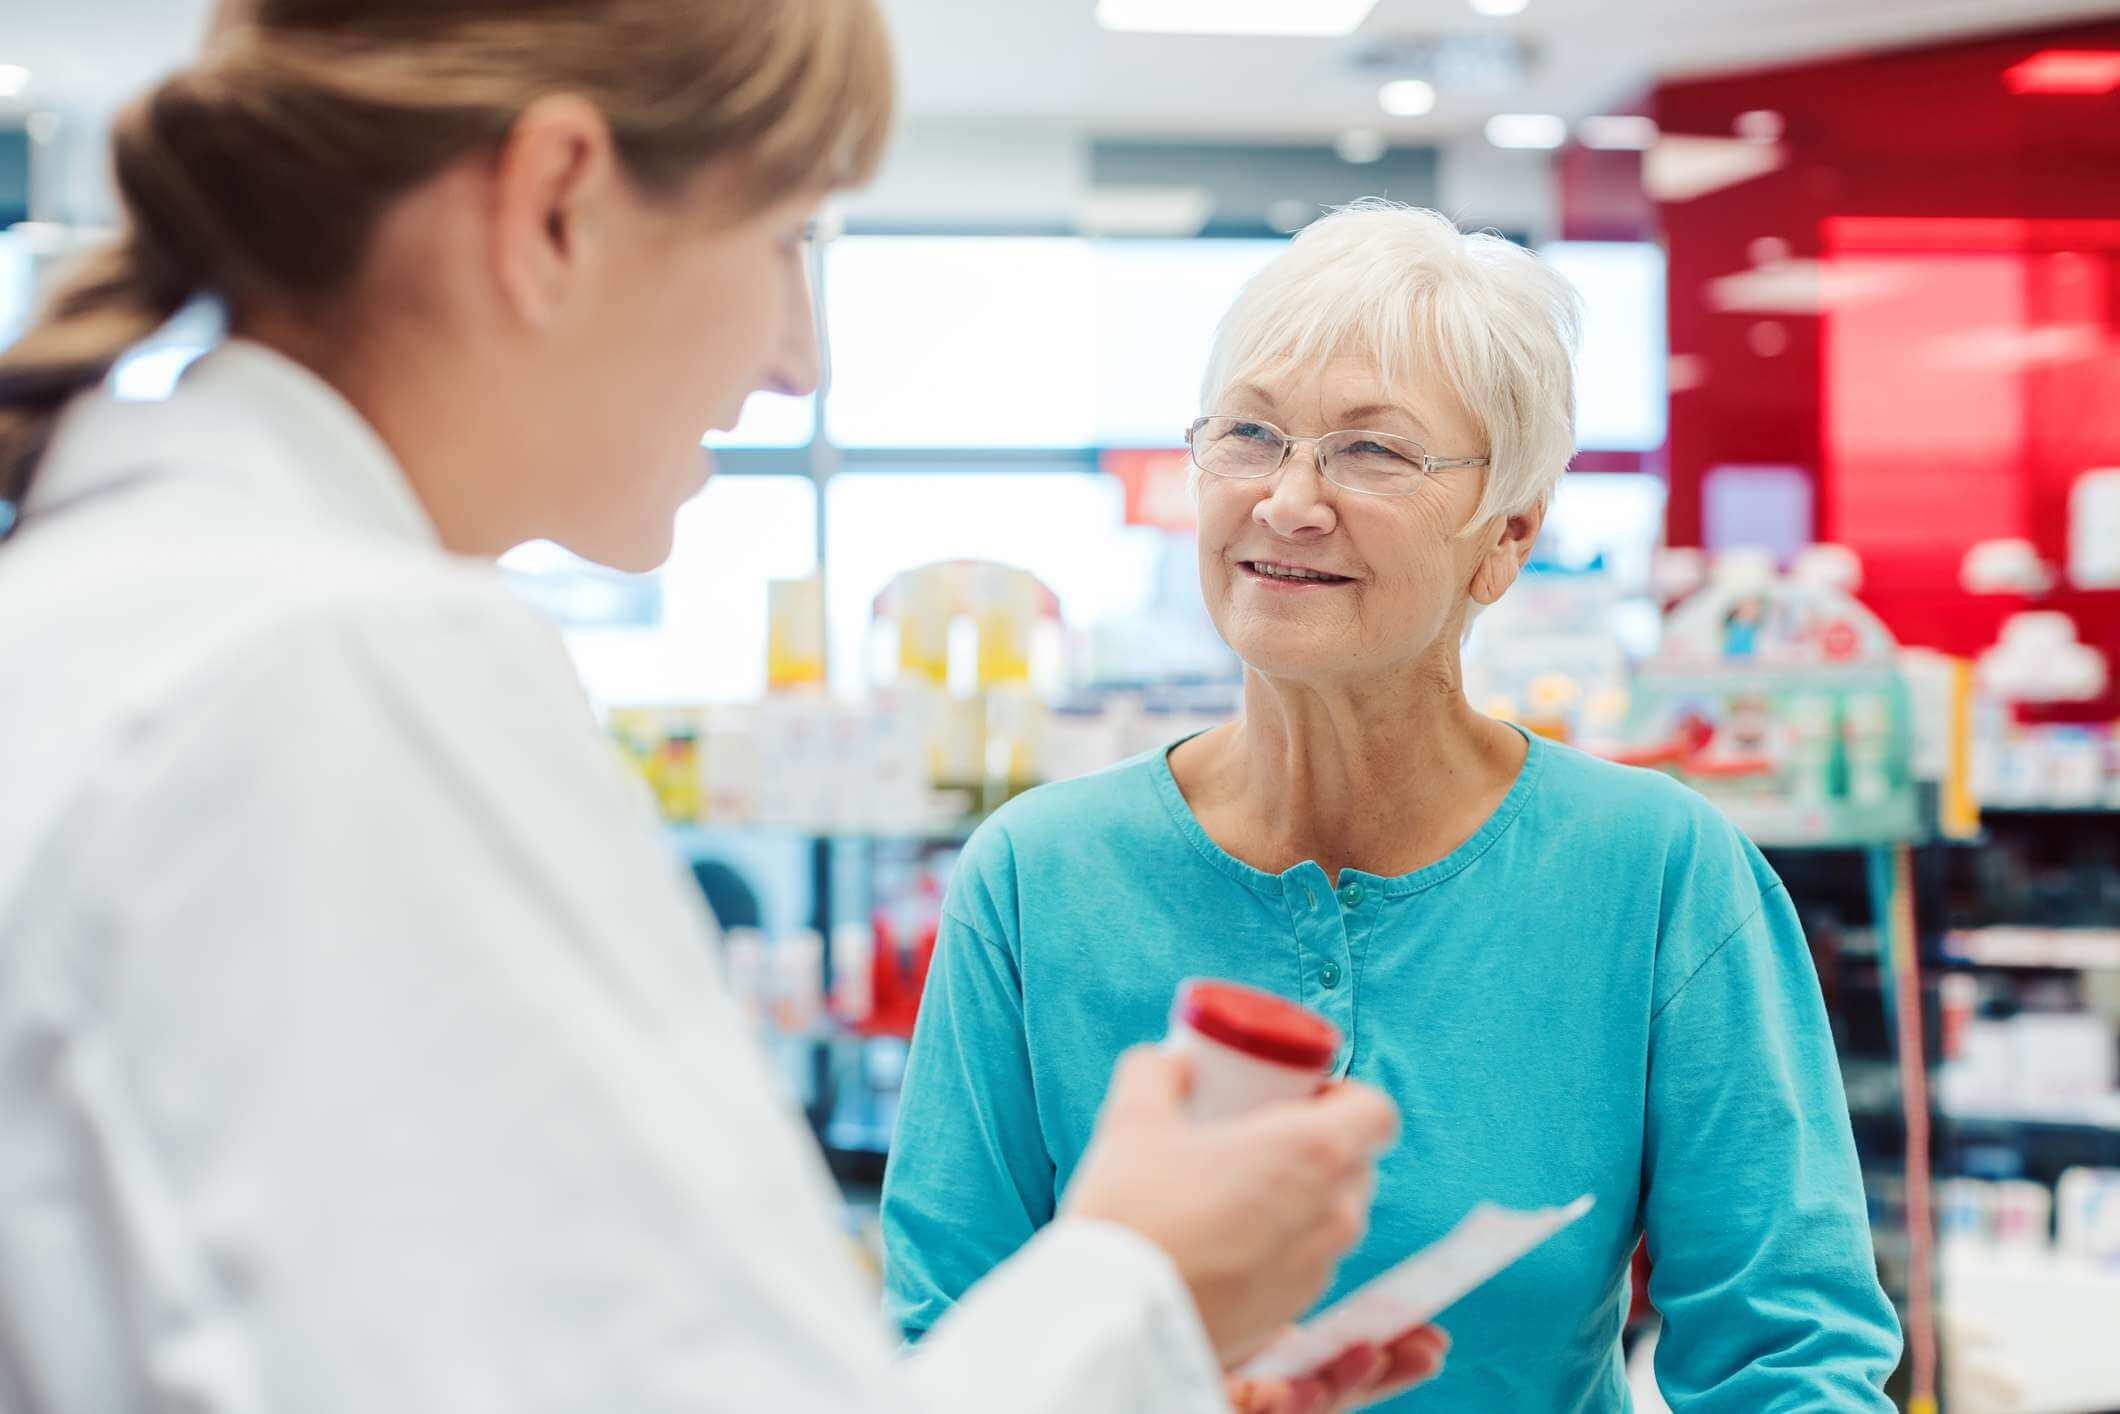 Ältere Frau in der Apotheke, die mit dem Chemiker oder Apotheker spricht, erklärt die Wirkung eines Medikaments